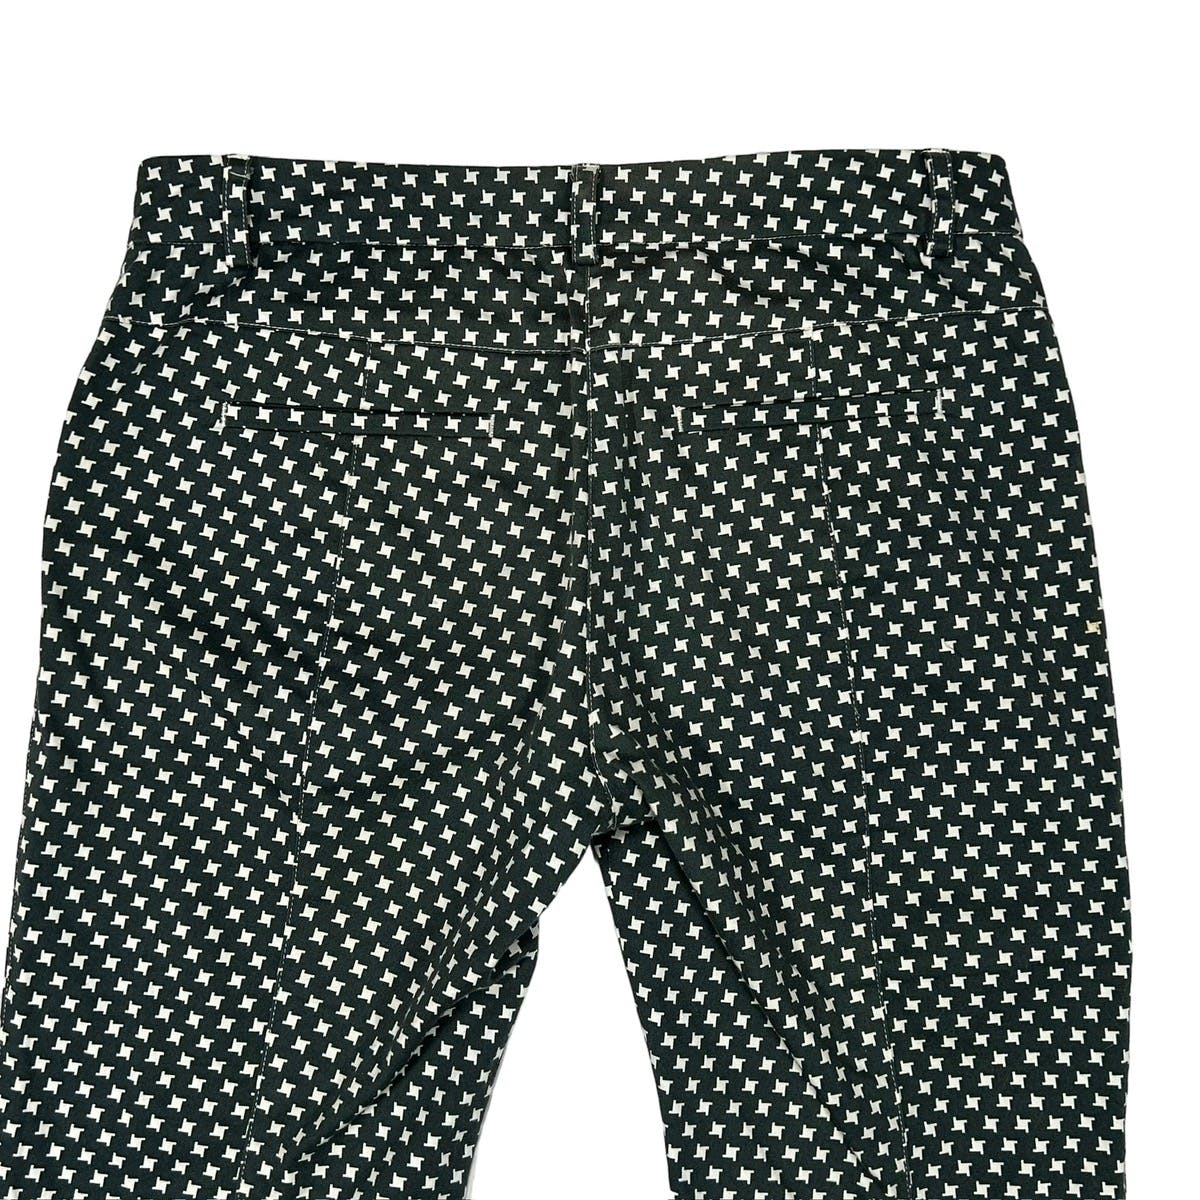 FW13 Star Pattern Pants - 4